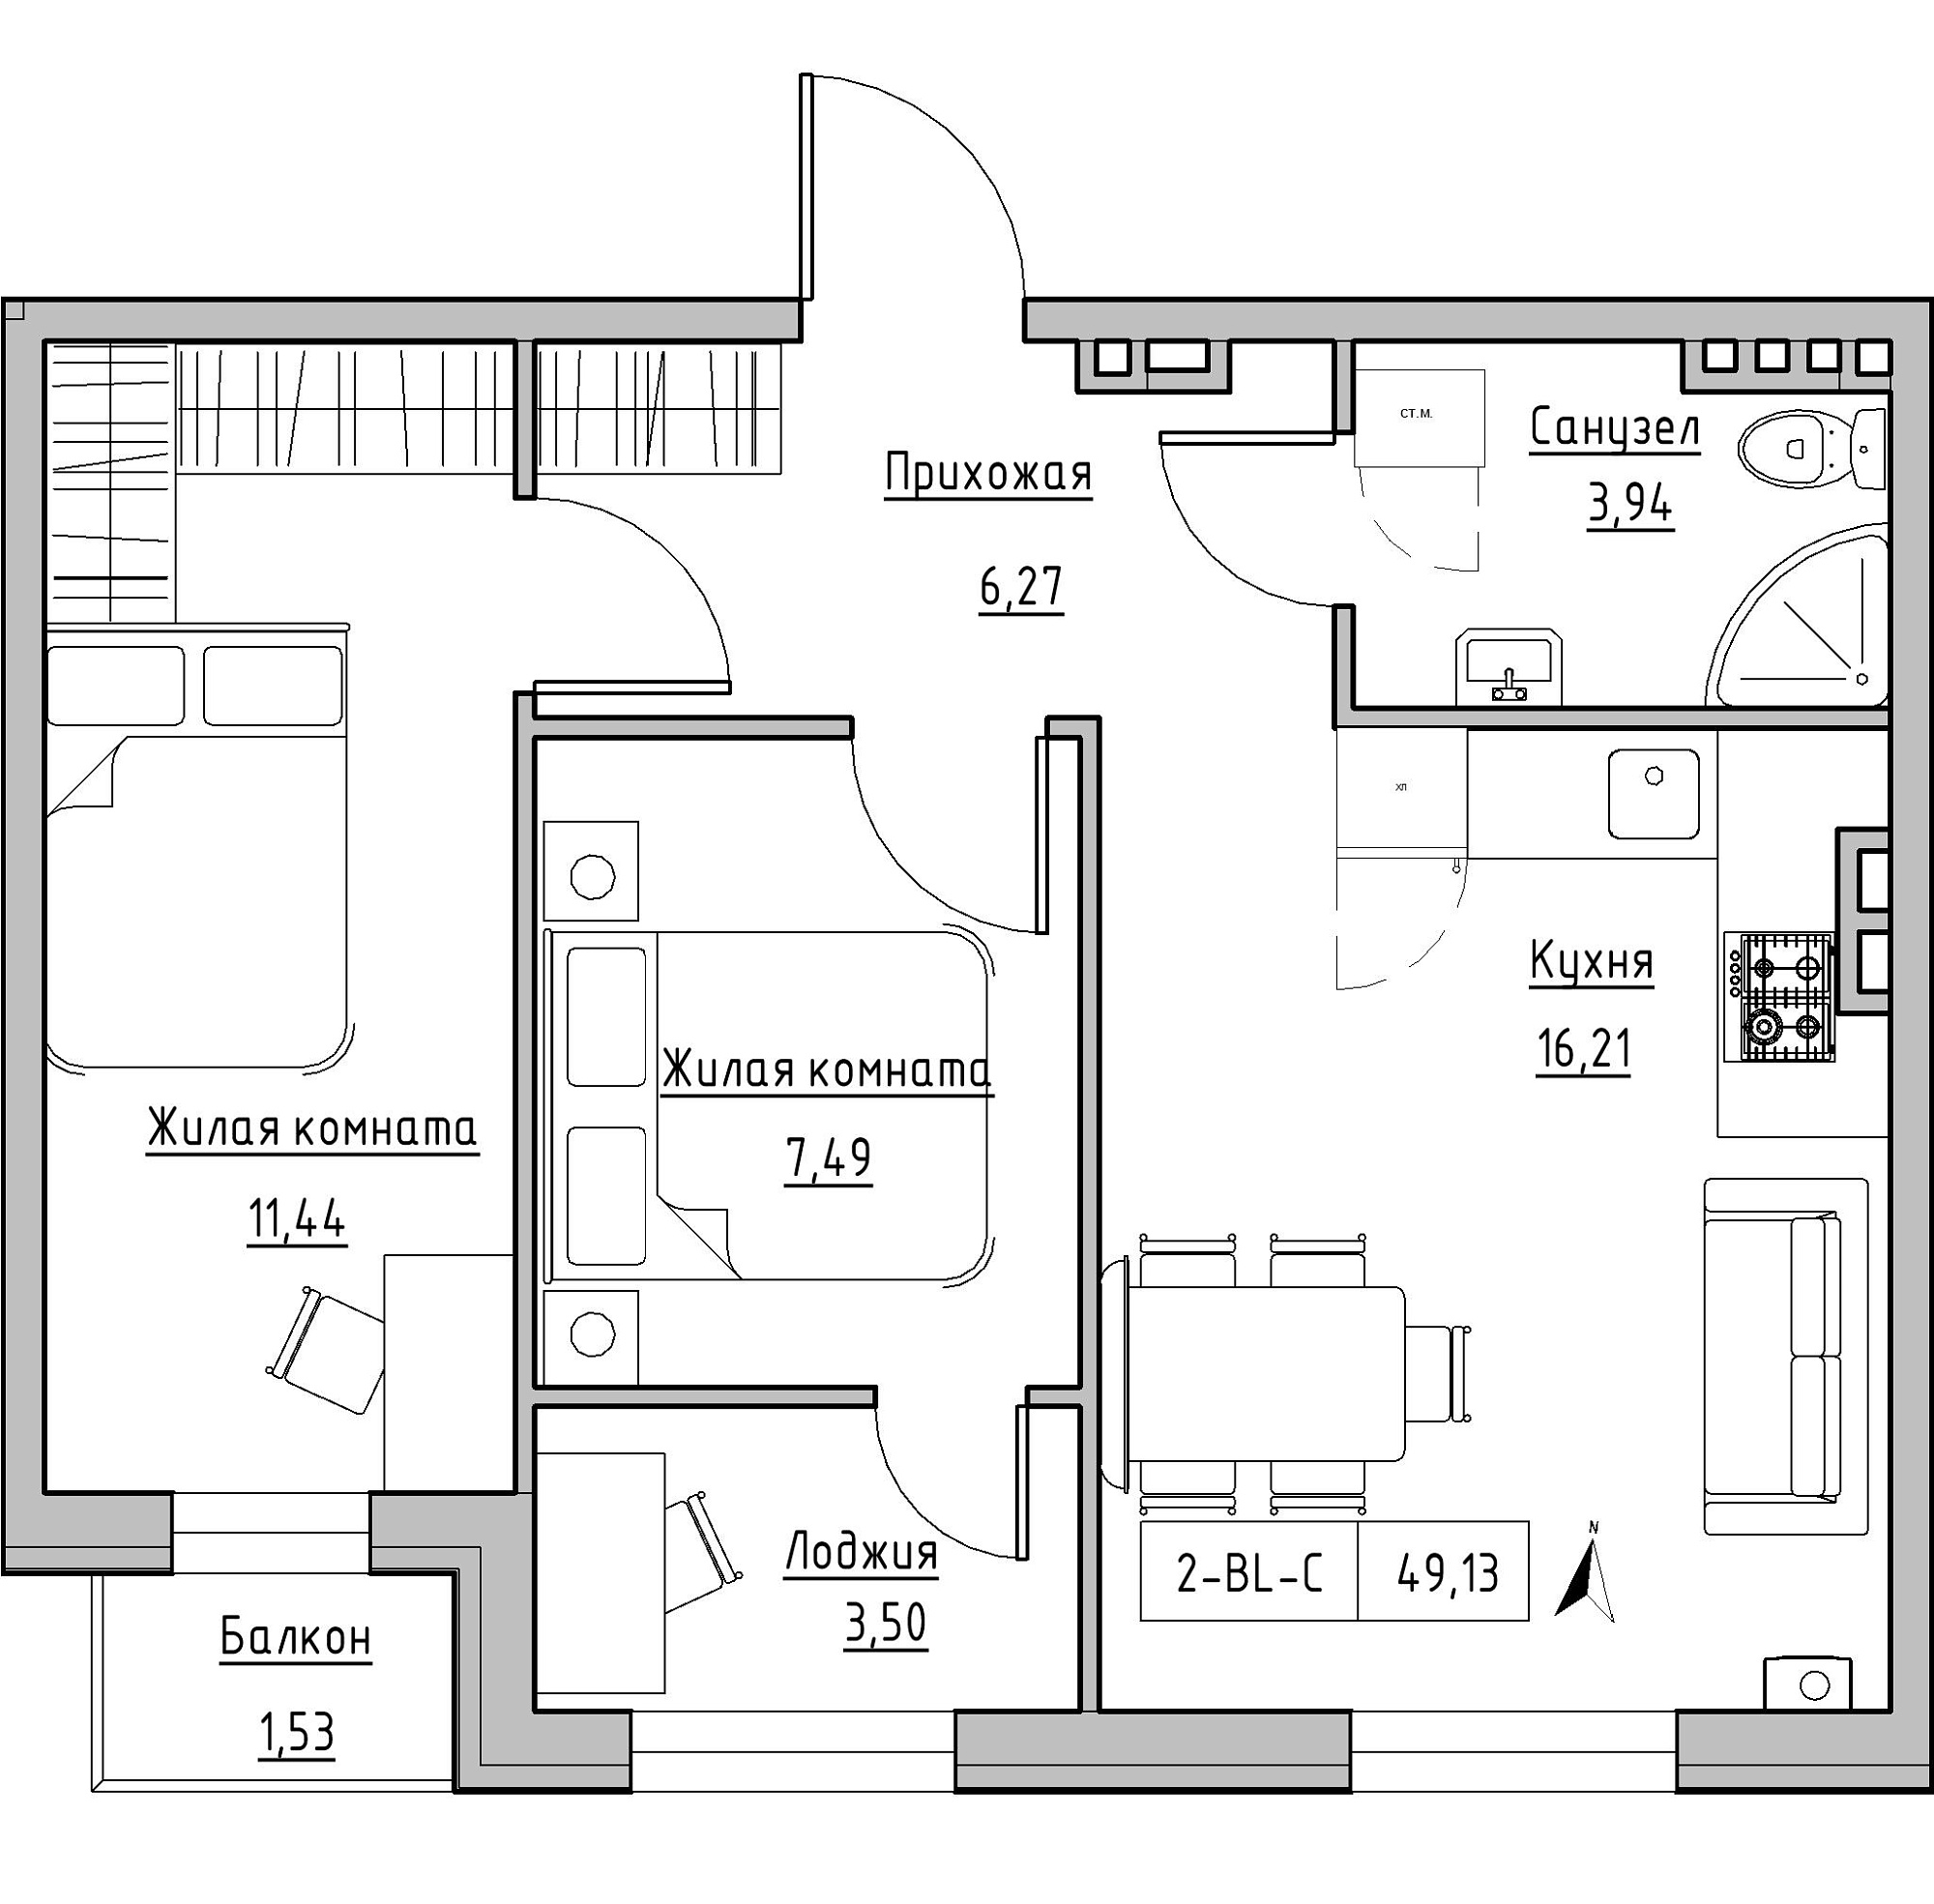 Планировка 2-к квартира площей 49.13м2, KS-024-03/0009.